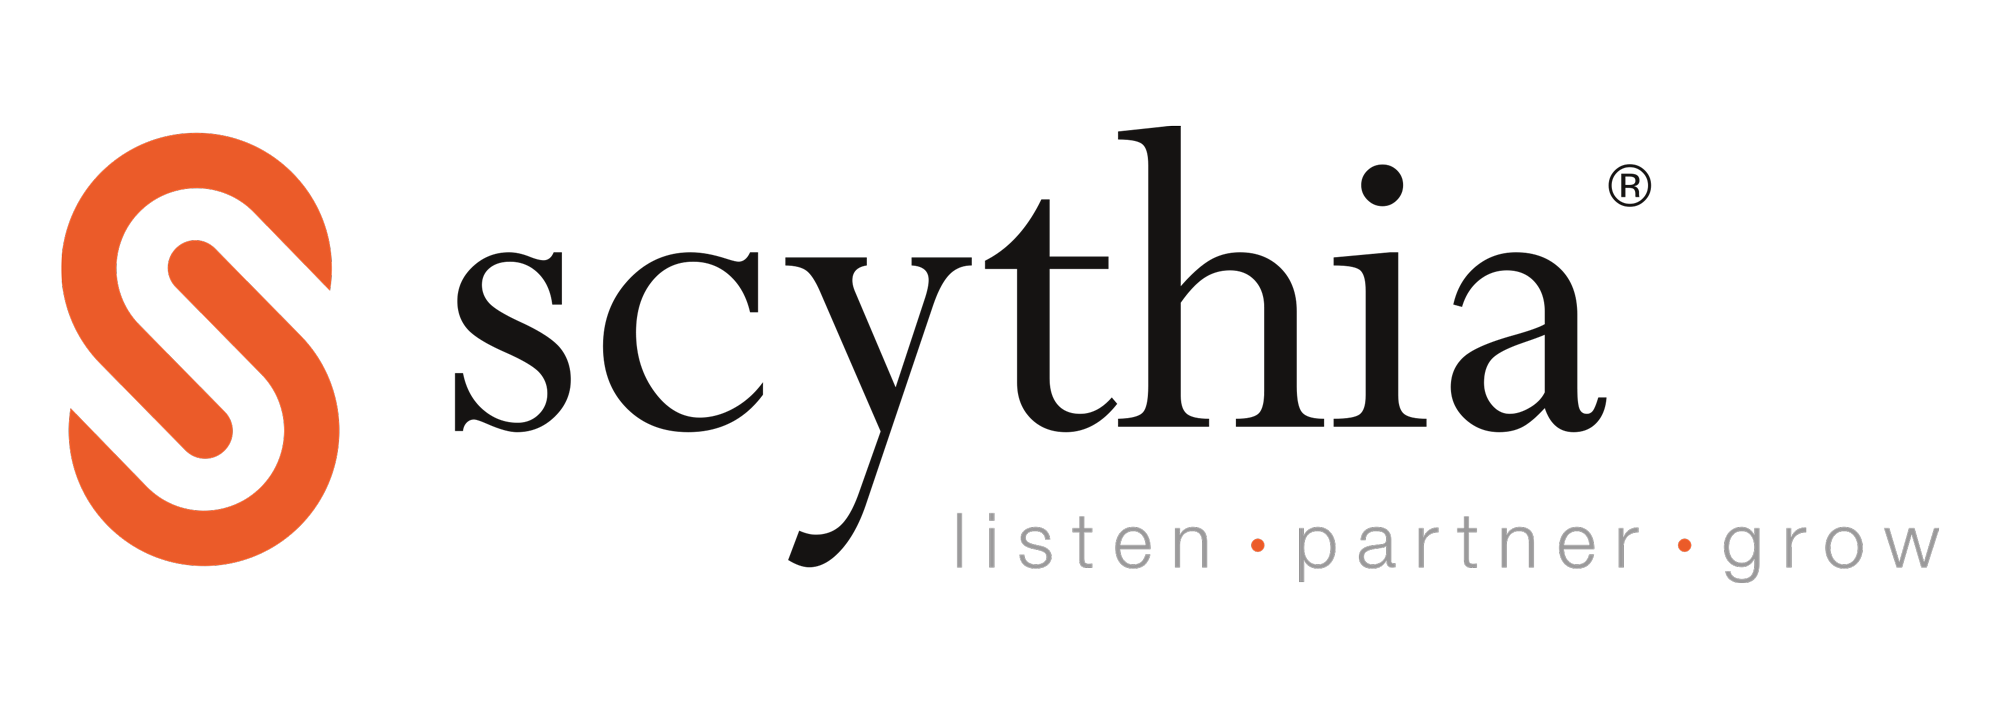 Scythia Brands